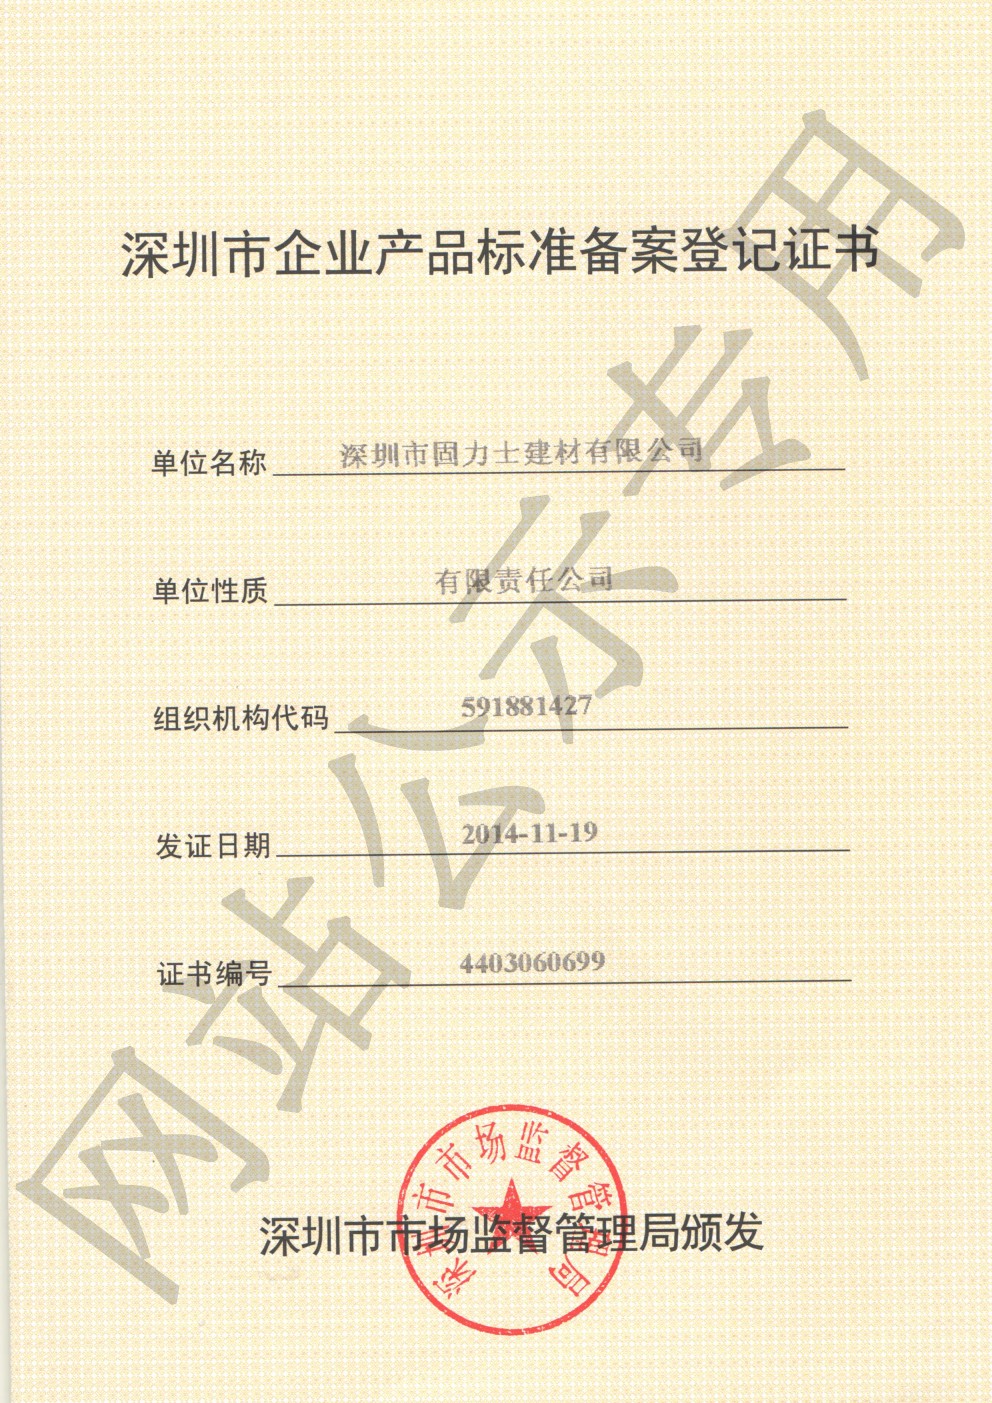 洛江企业产品标准登记证书